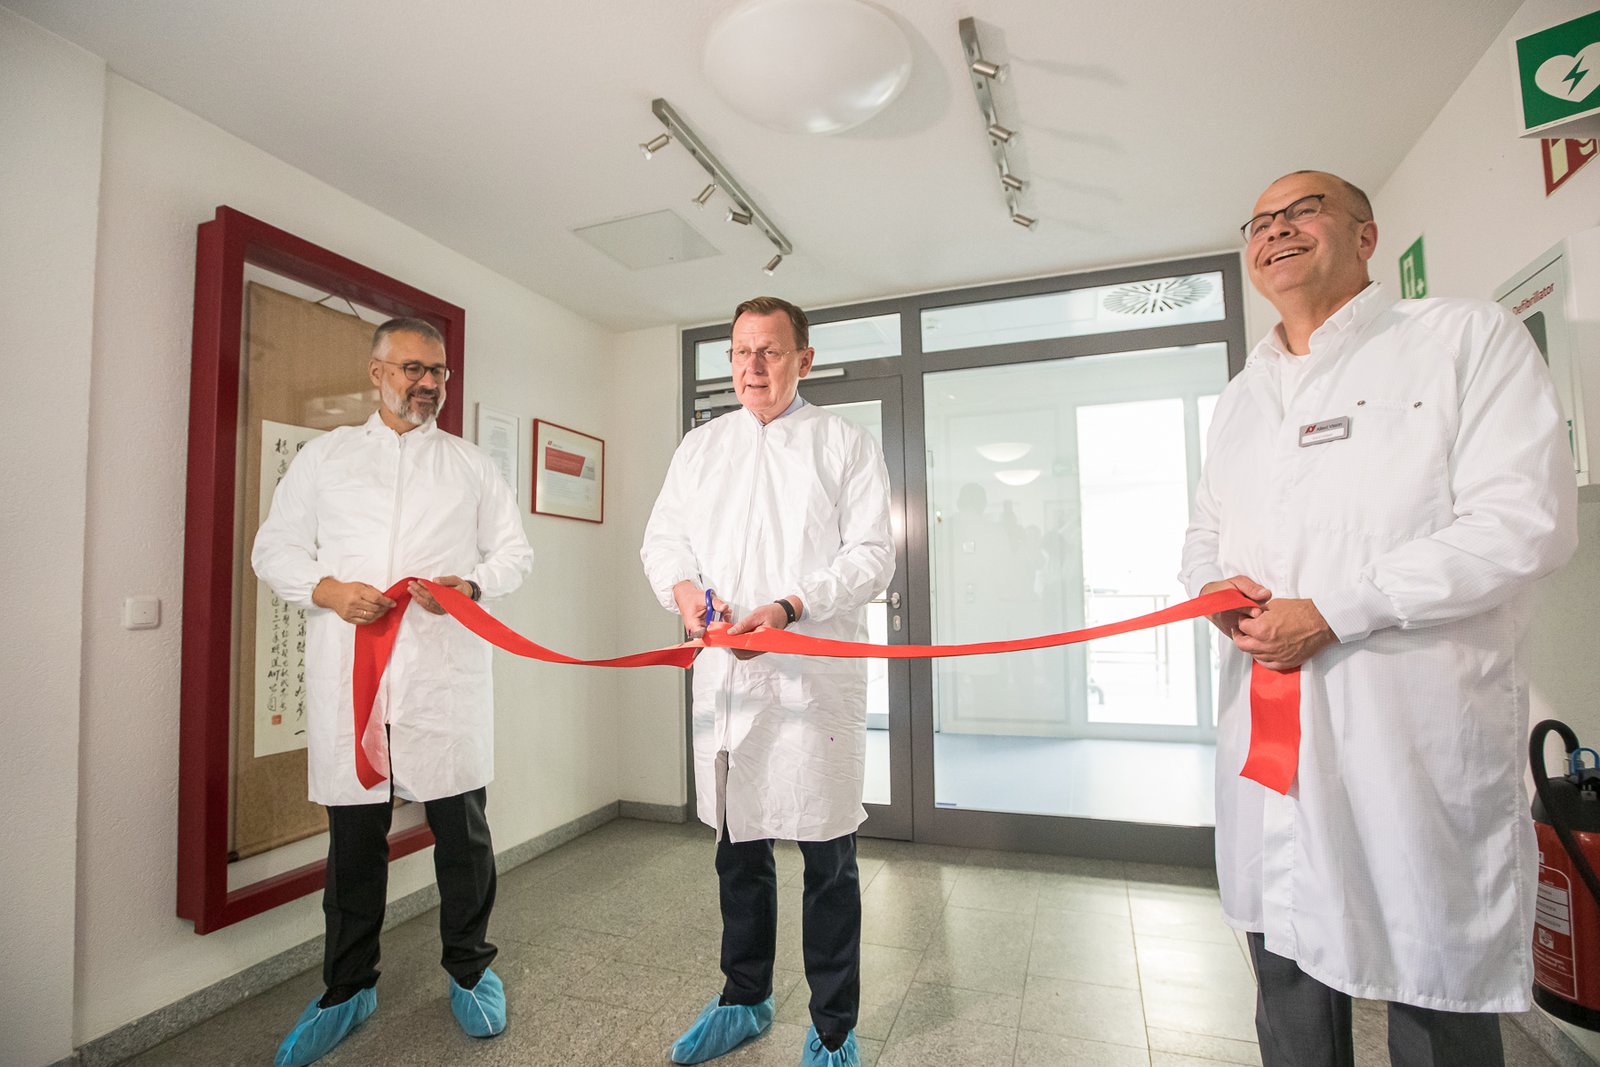 Thuringia Prime Minister Bodo Ramelow inaugurates Allied Vision facility in Stadtroda